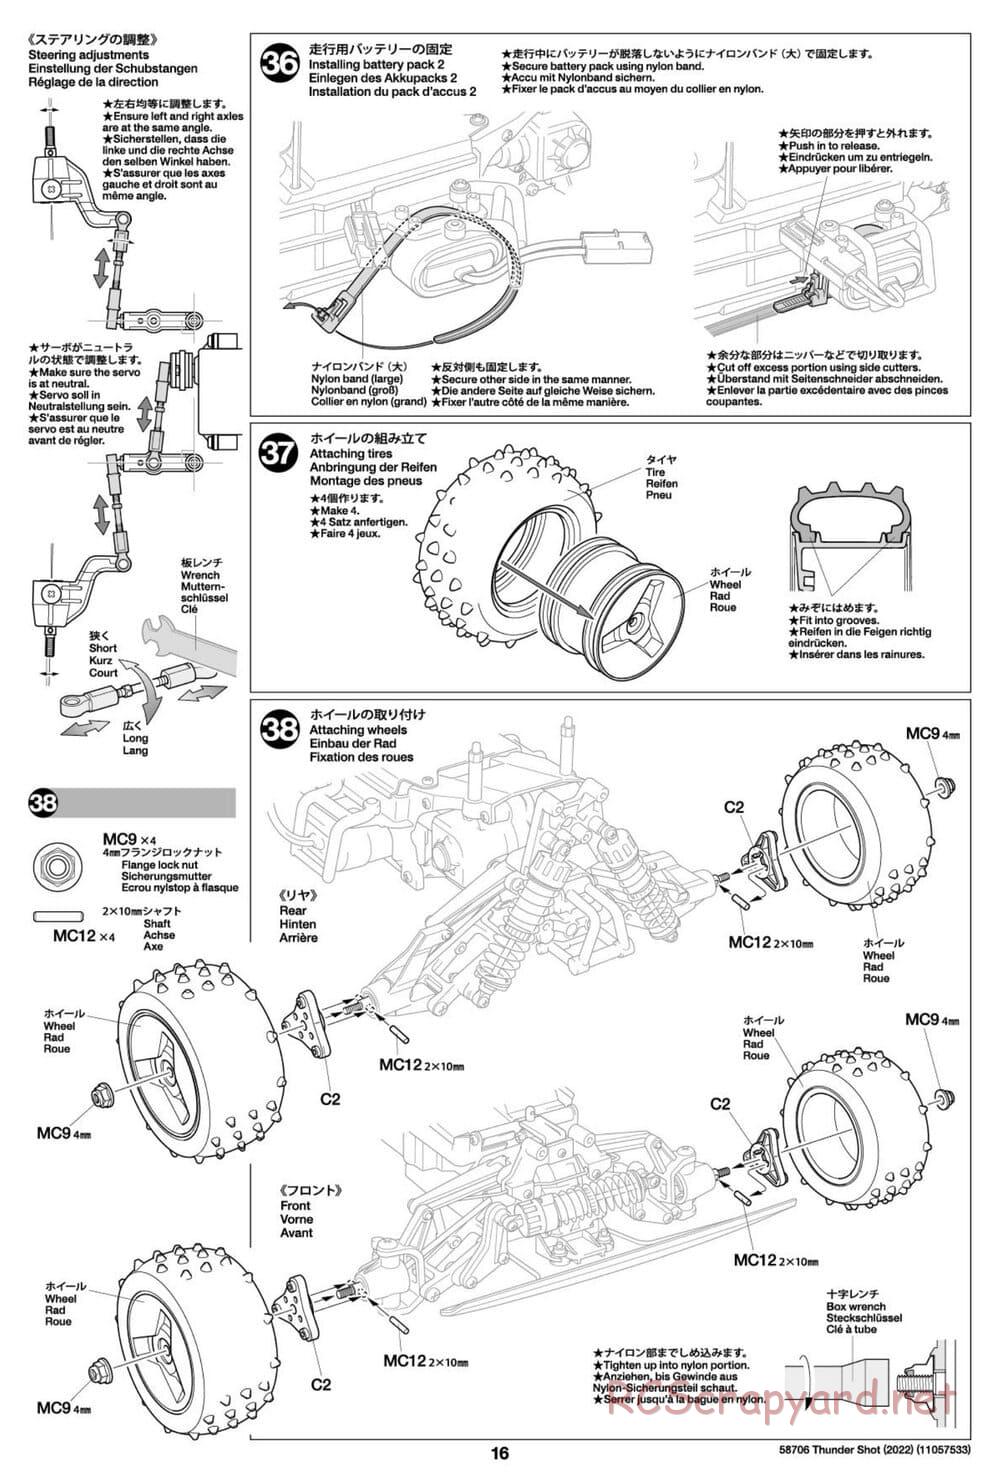 Tamiya - Thunder Shot (2022) - TS1/TS2 Chassis - Manual - Page 16